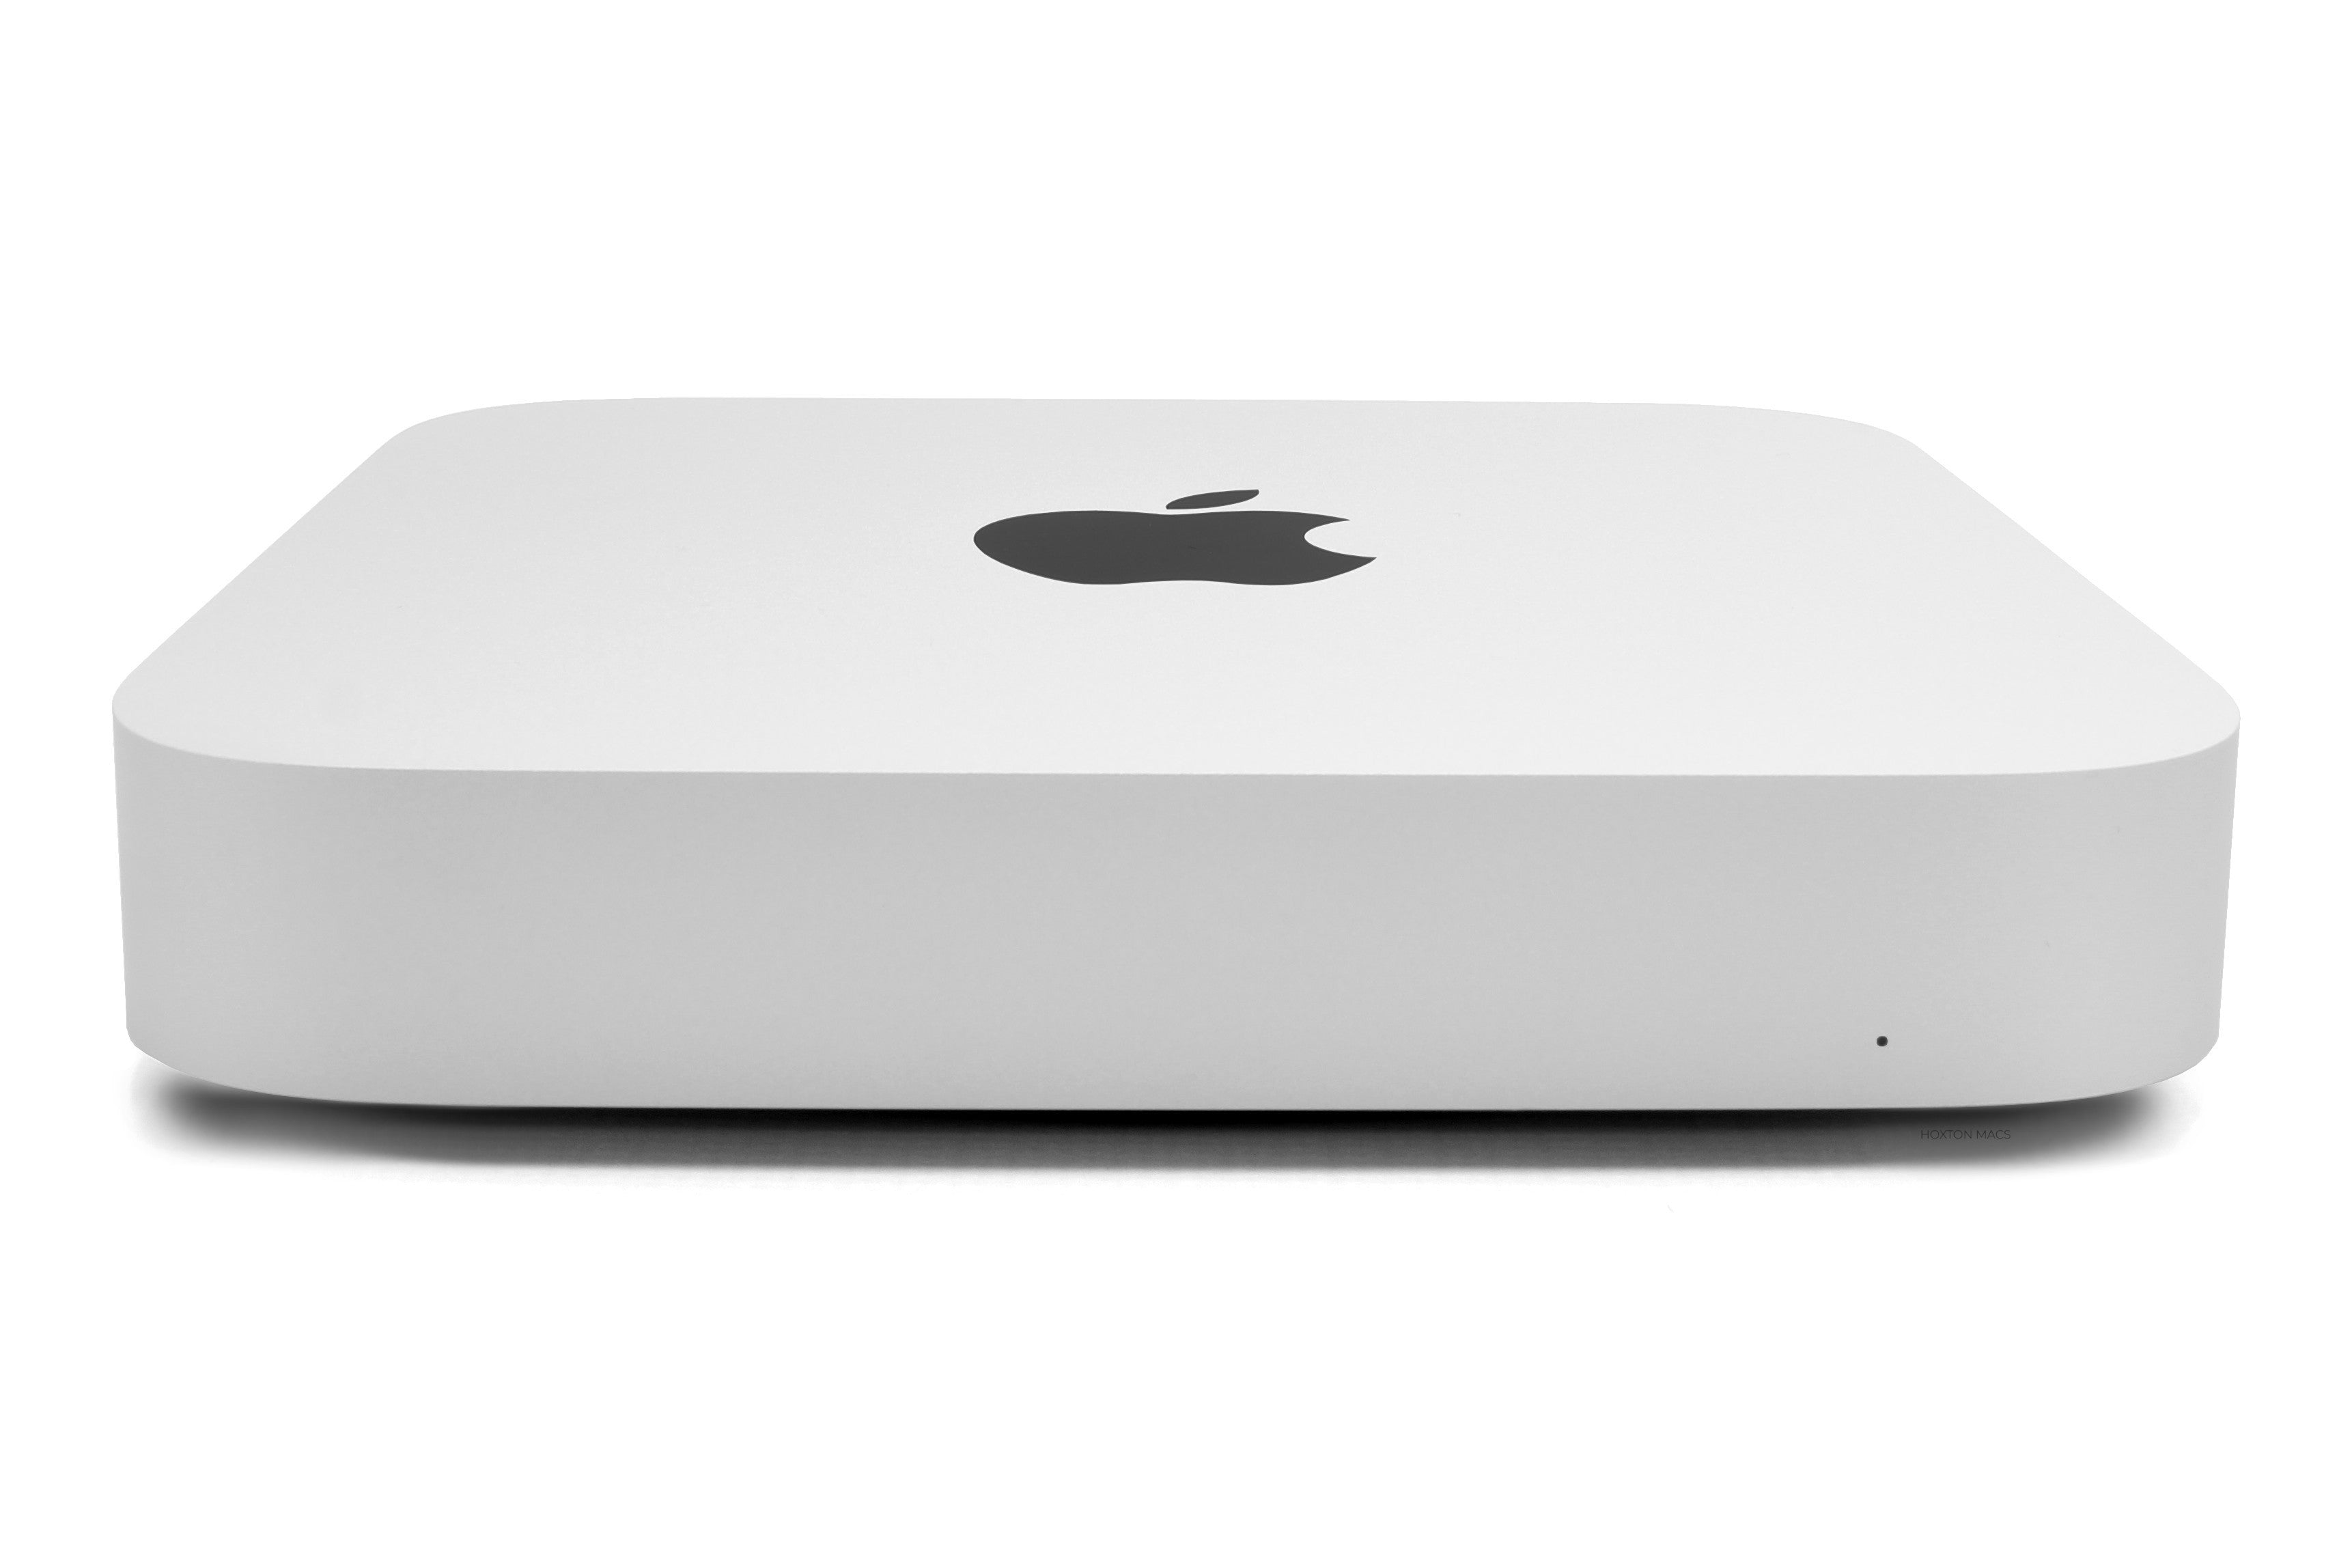 MacBook Air 13-inch M1 (Silver, 2020) - Good